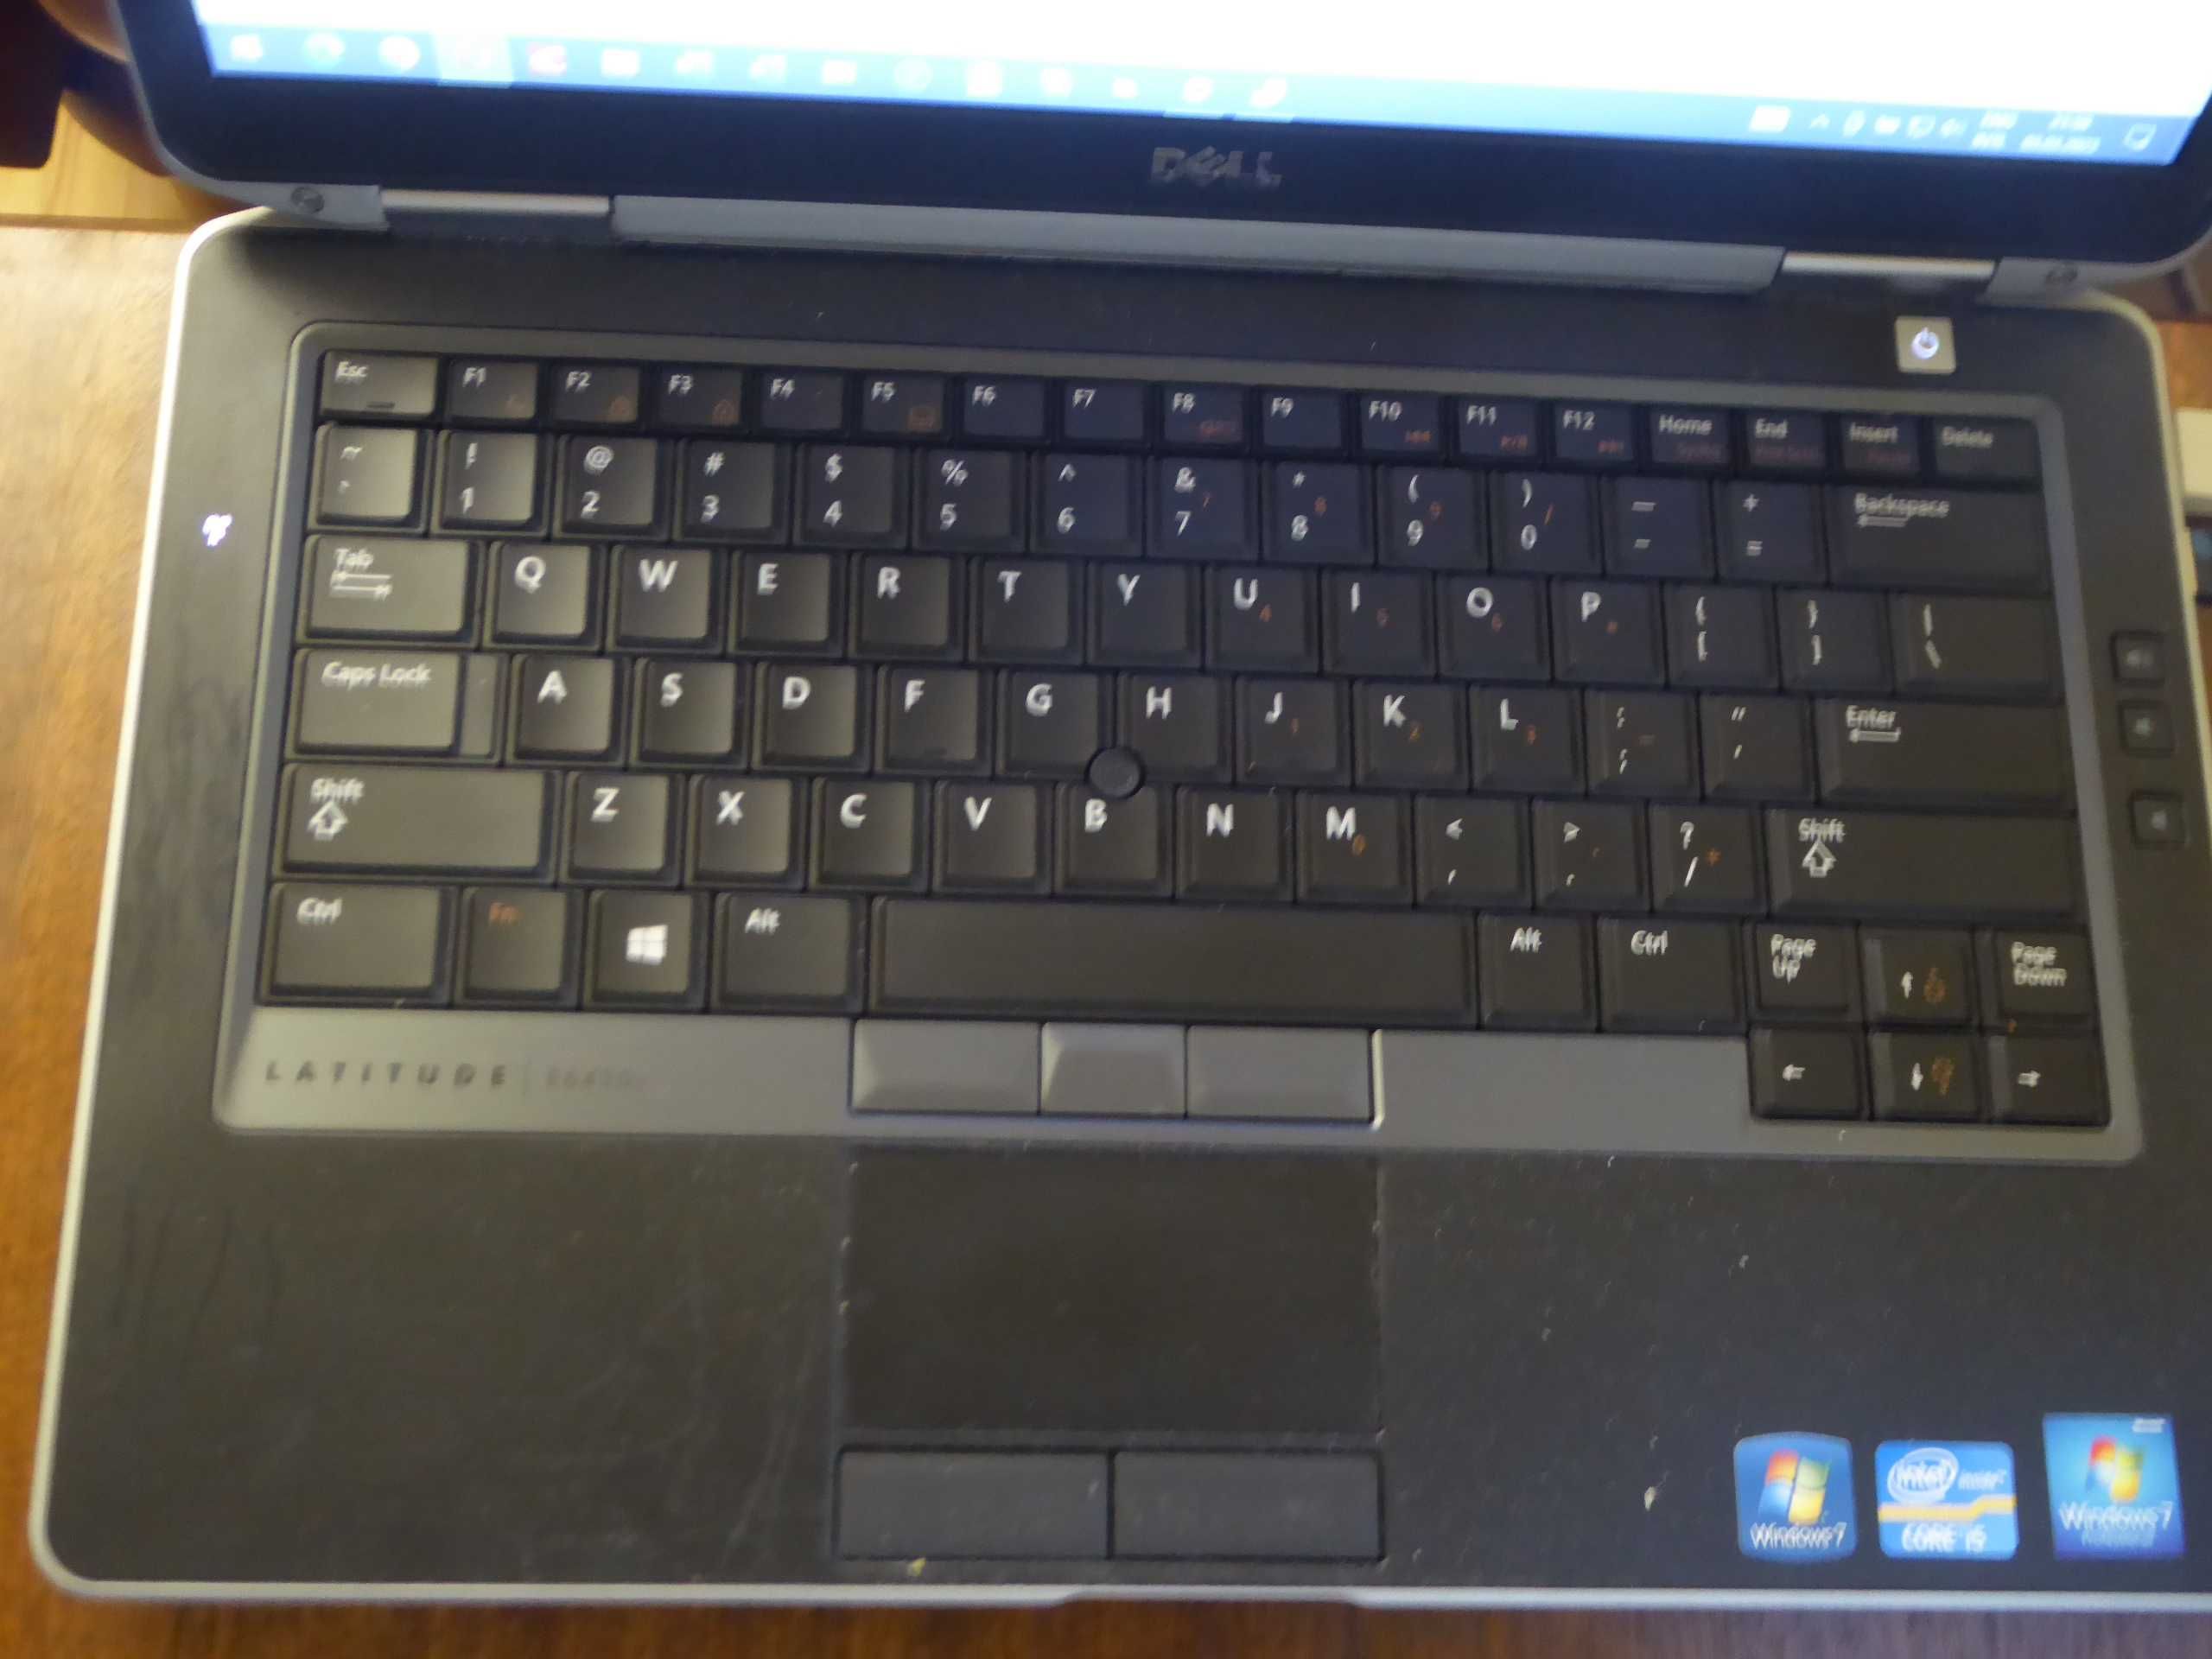 Laptop Dell Latitude E6430s